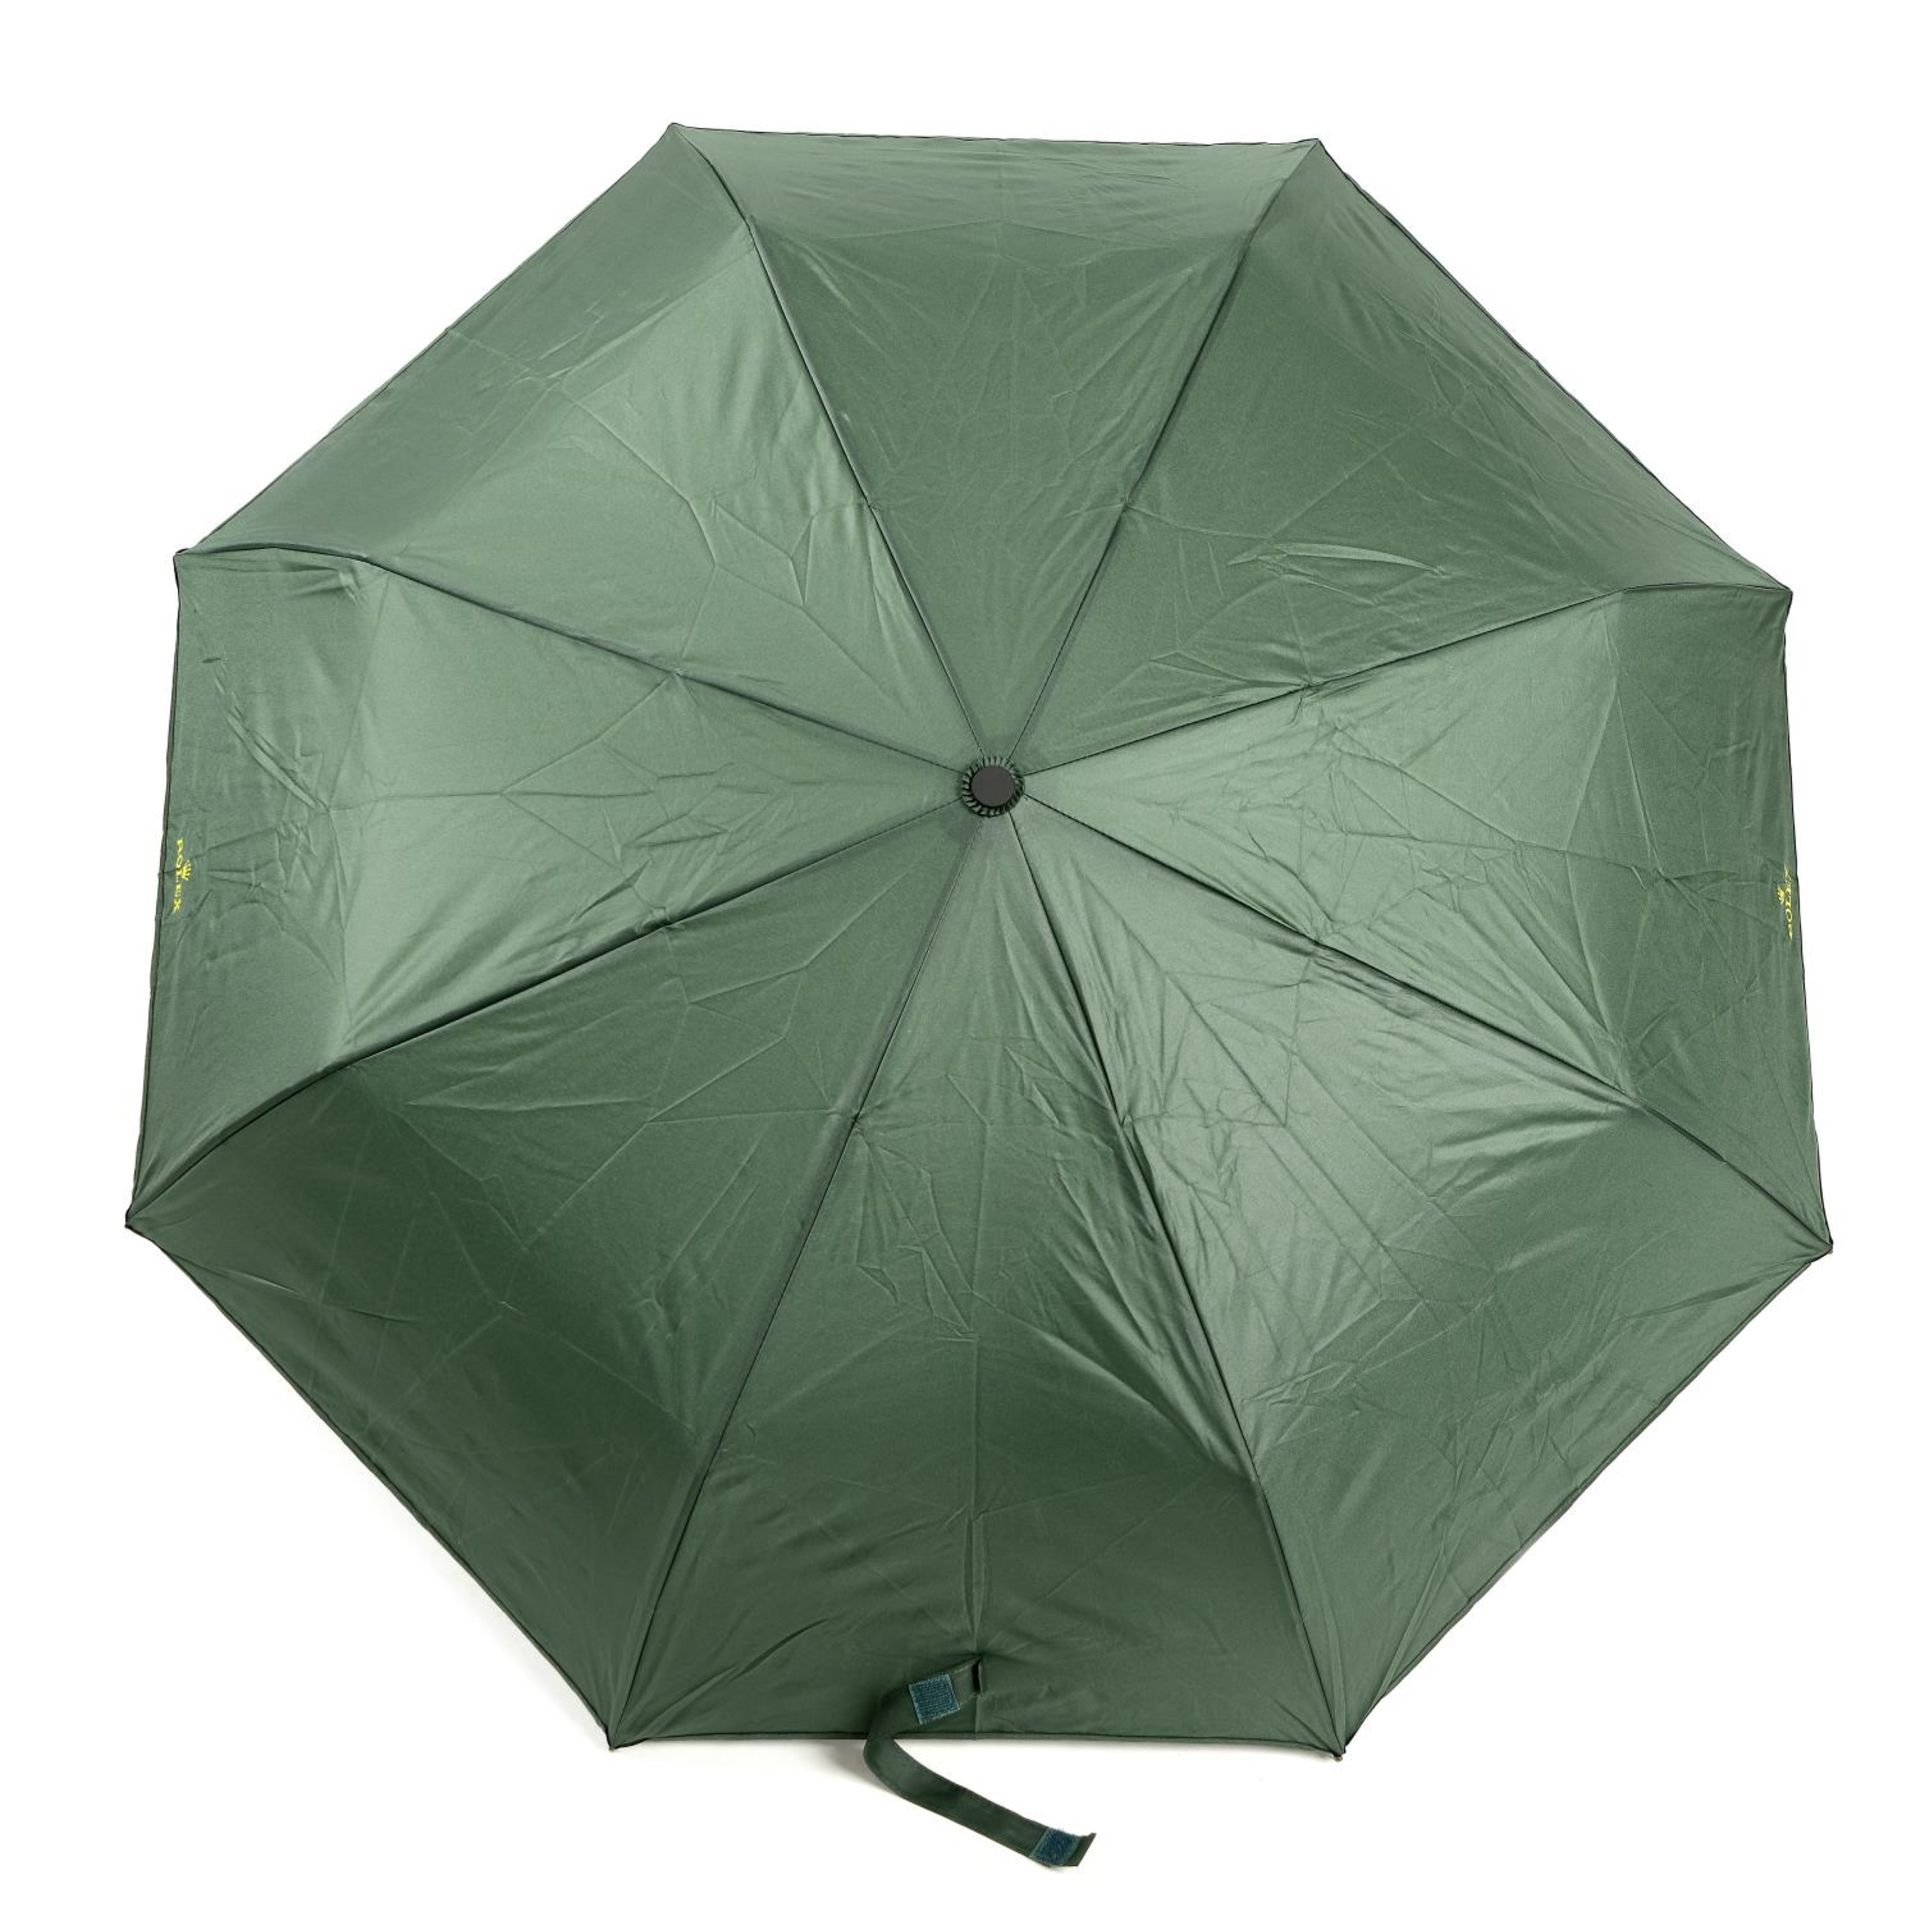 ROLEX - a retractable umbrella. - Bild 4 aus 4